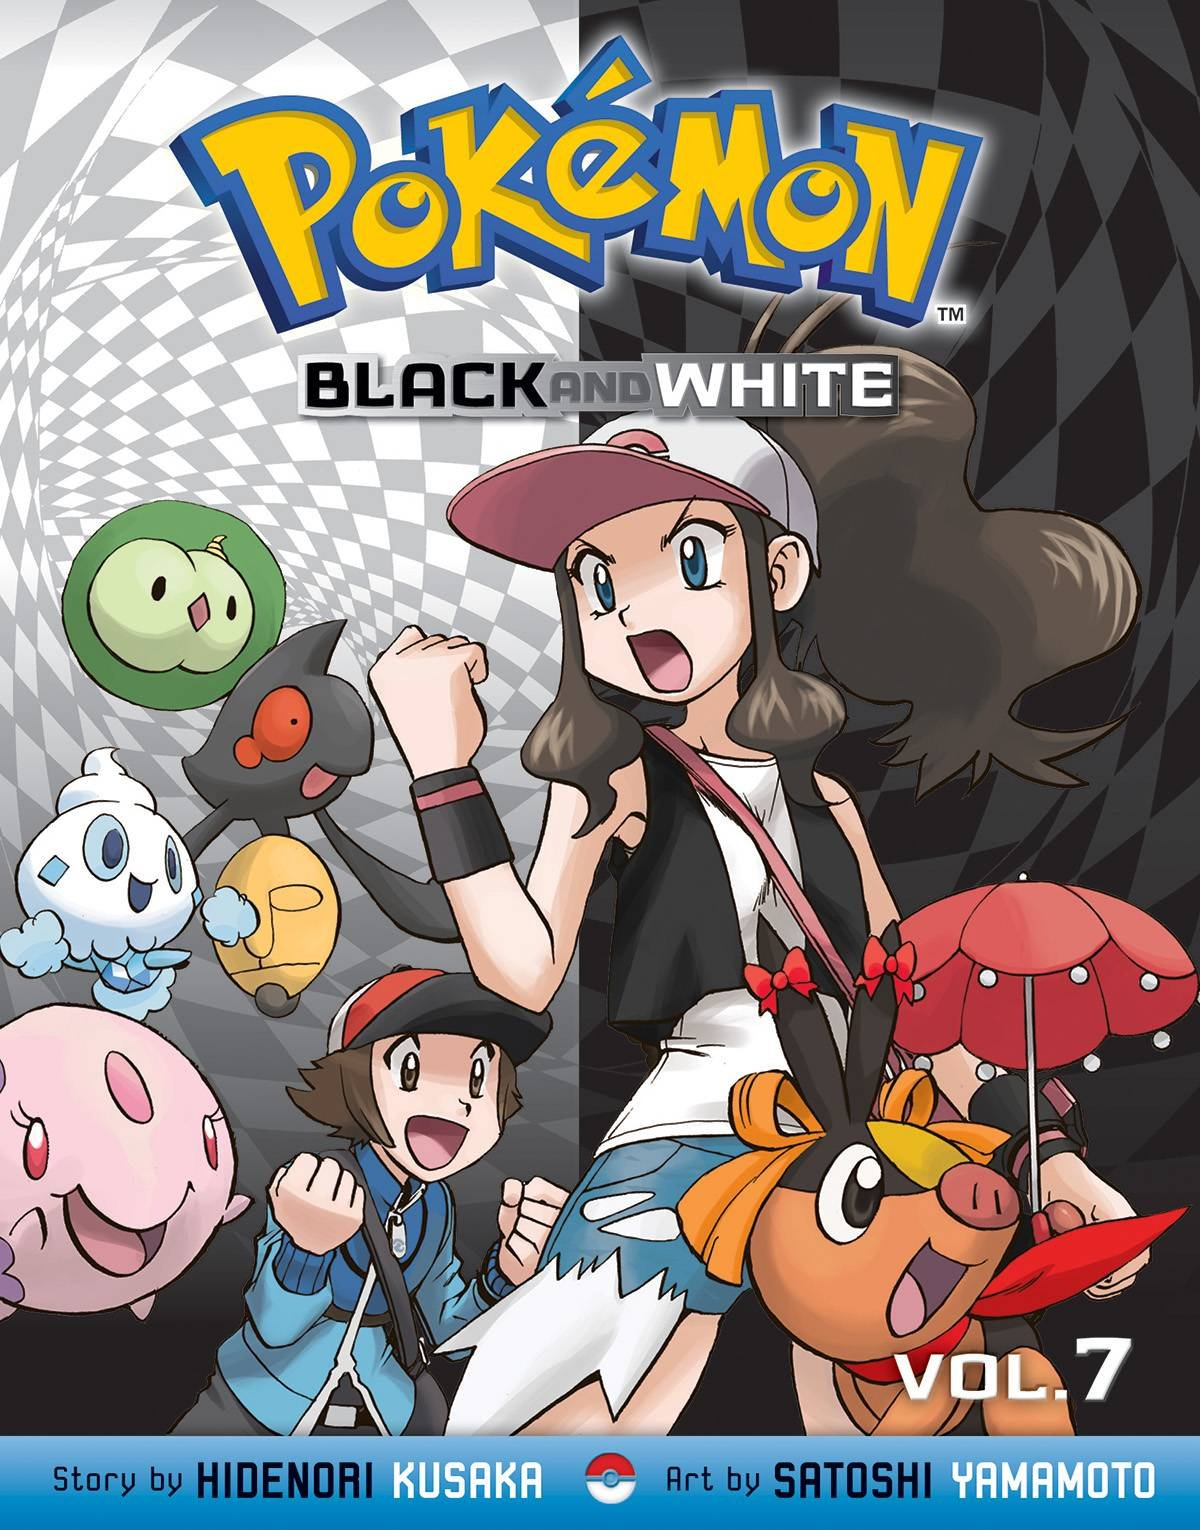 Pokémon black version, Pokemon white version. [Volume 2], The